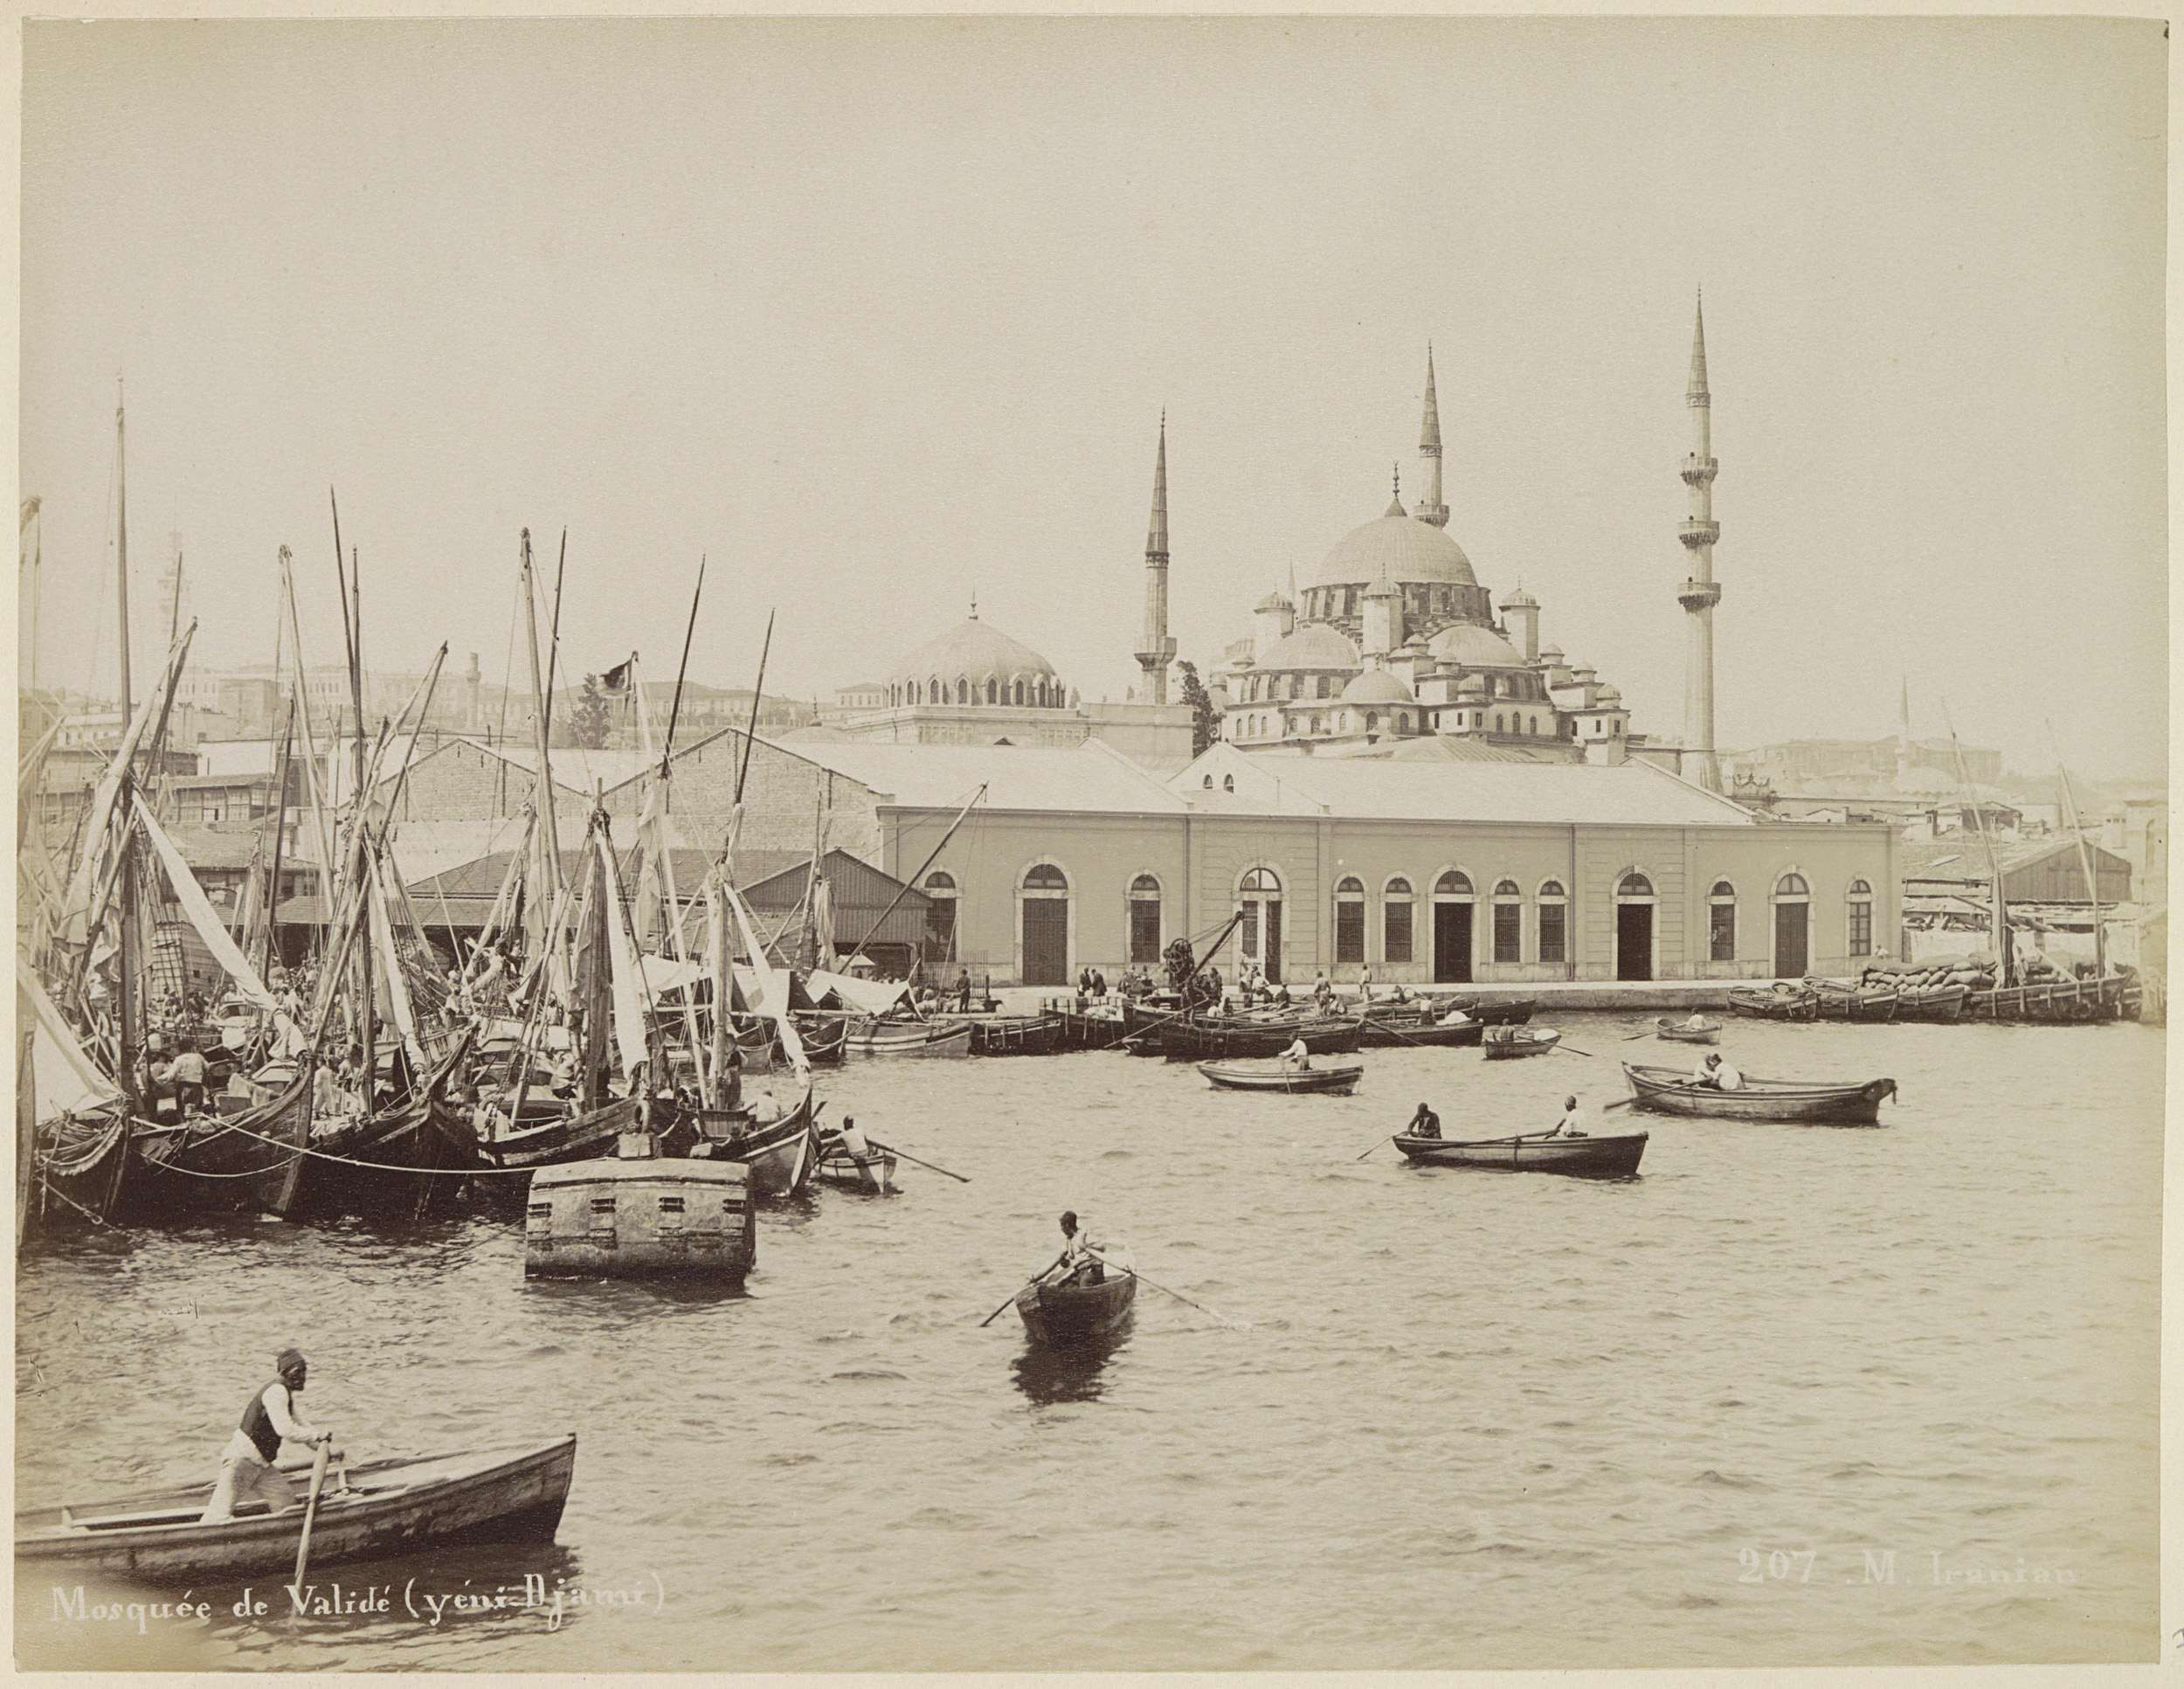 Mosquée de Validé (yéni-Djami), Gezicht op de Yeni Validemoskee in Istanbul met op de voorgrond boten